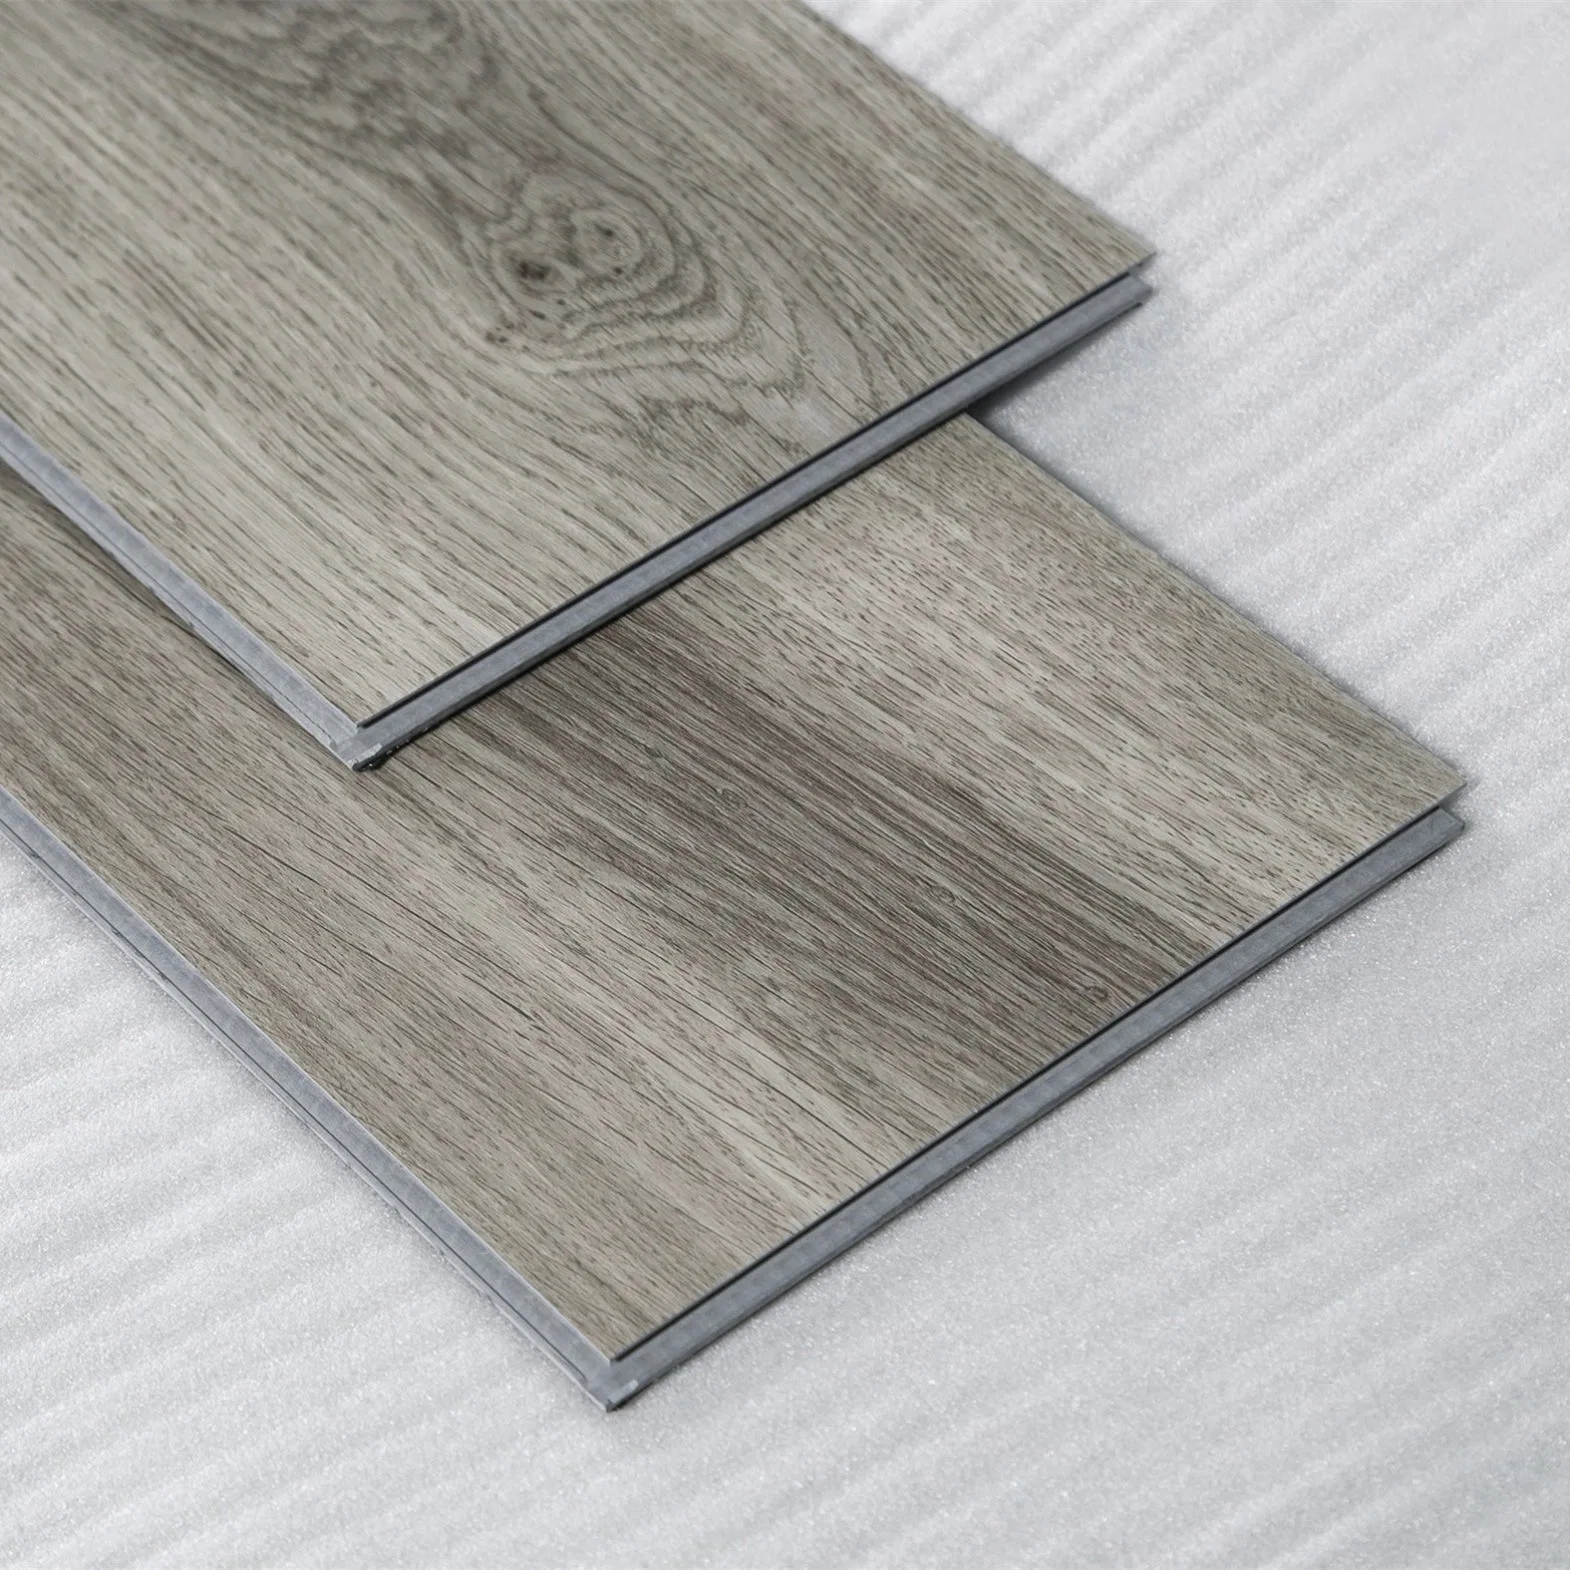 Revêtement de sol stratifié en vinyle PVC Lvt Spc Click ignifuge, imperméable et durable pour la décoration commerciale.